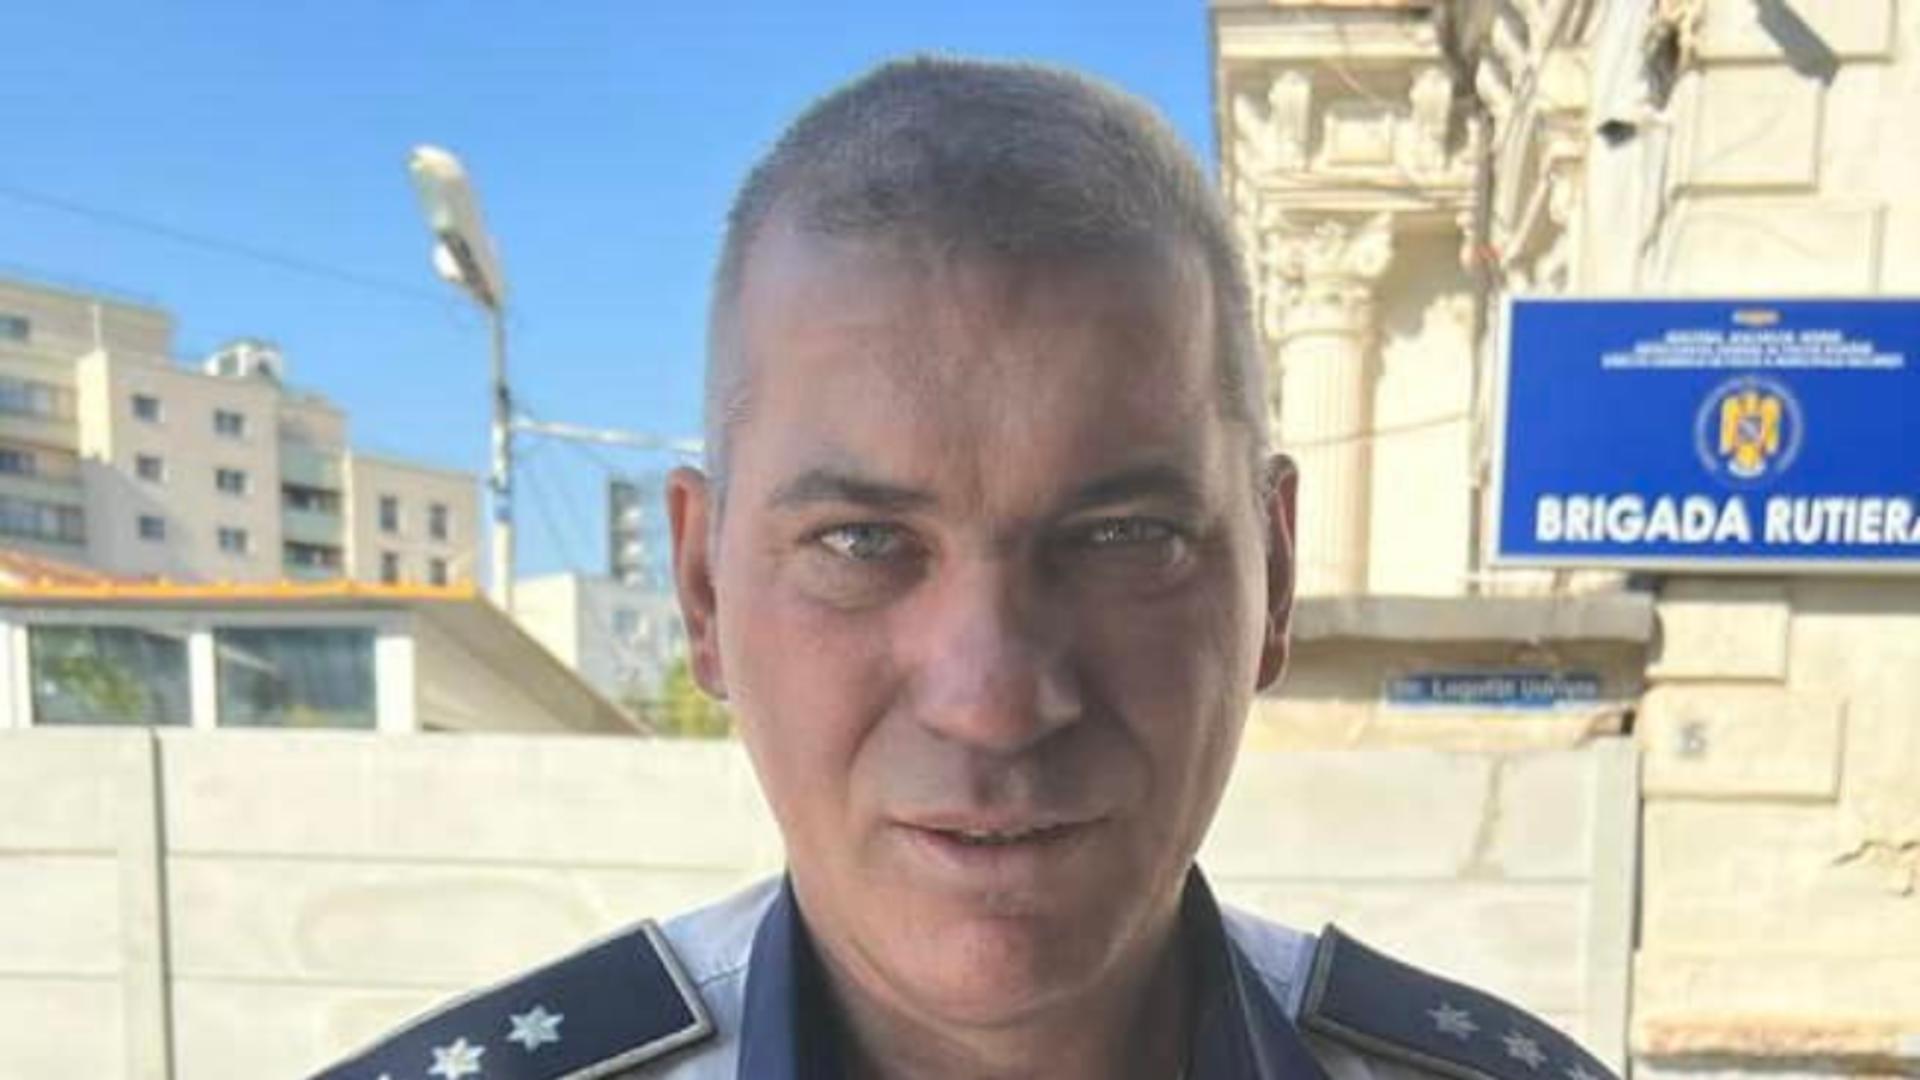 Vlăsceanu Ionuț, comisar-șef la Brigada Rutieră din Capitală